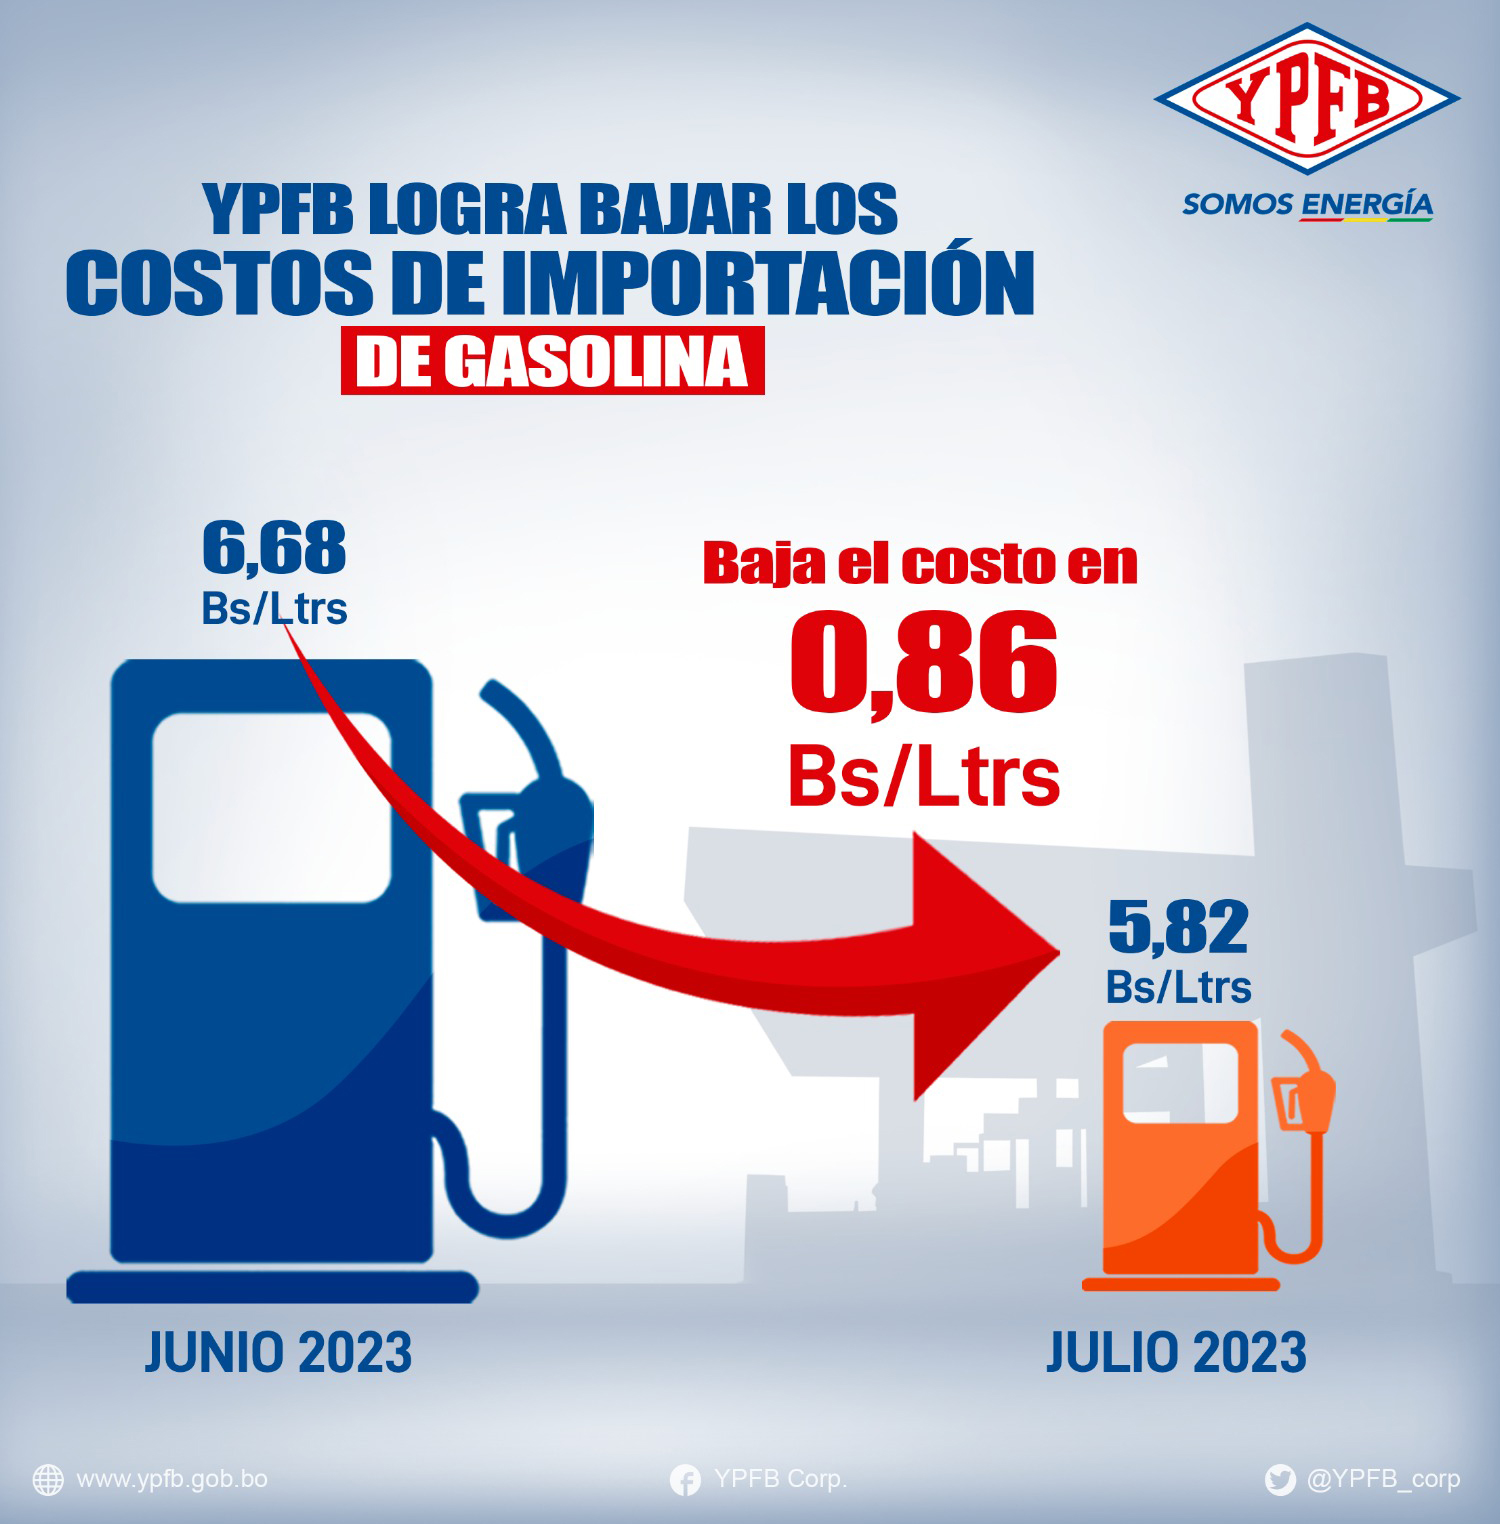 YPFB continúa reducción de costos por importación de gasolina en un escenario de precio internacional al alza